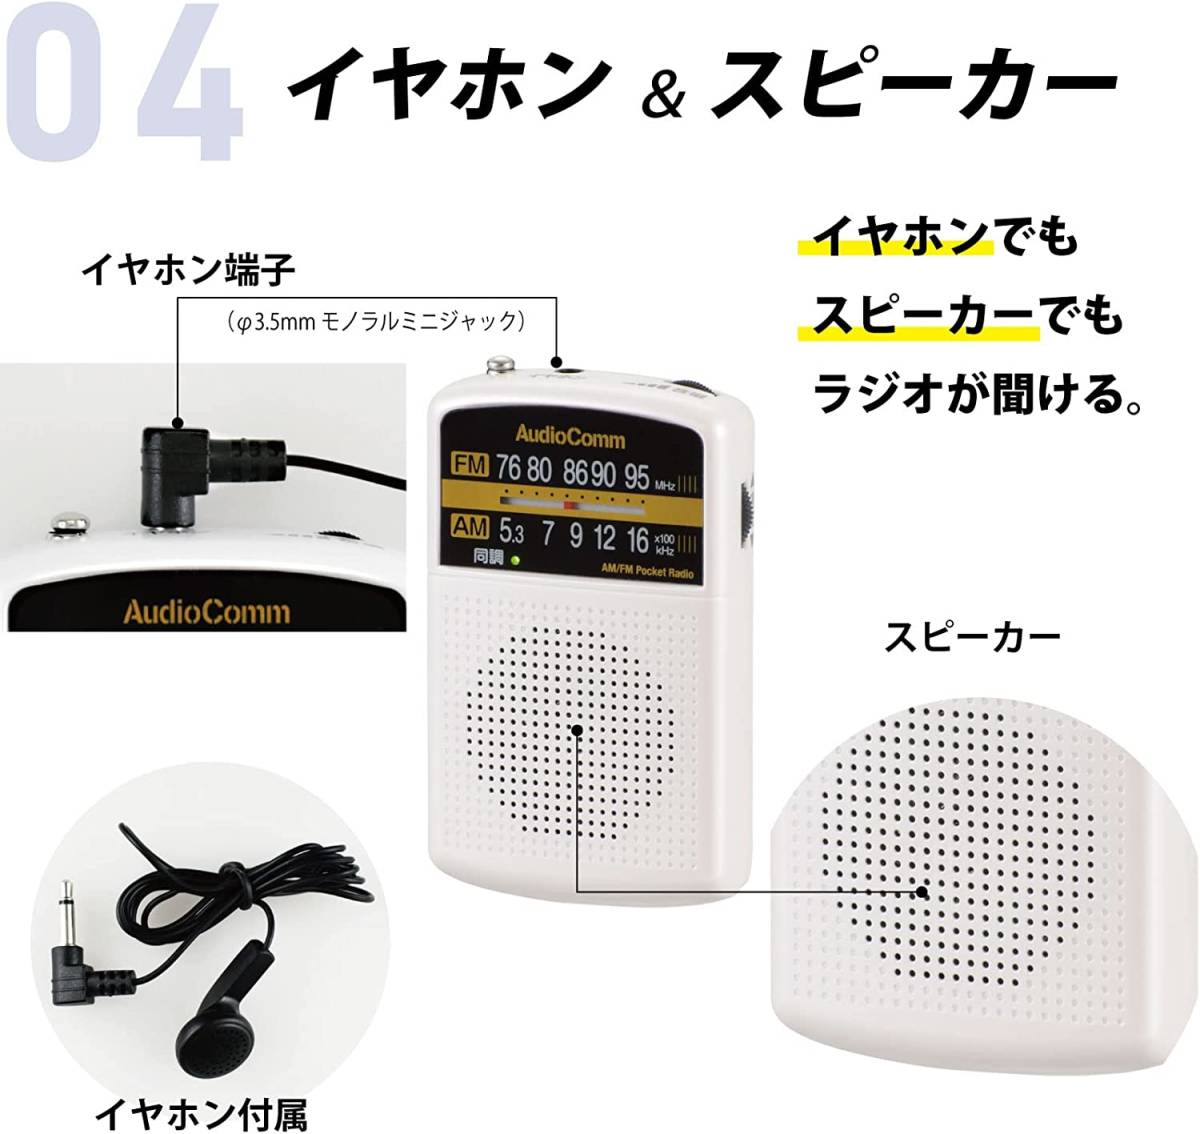 新品 送料無料 AudioComm AM/FMポケットラジオ ピンク RAD-P135N-P スリム 薄い コンパクト 小さい 小型 オーディオコム_画像7